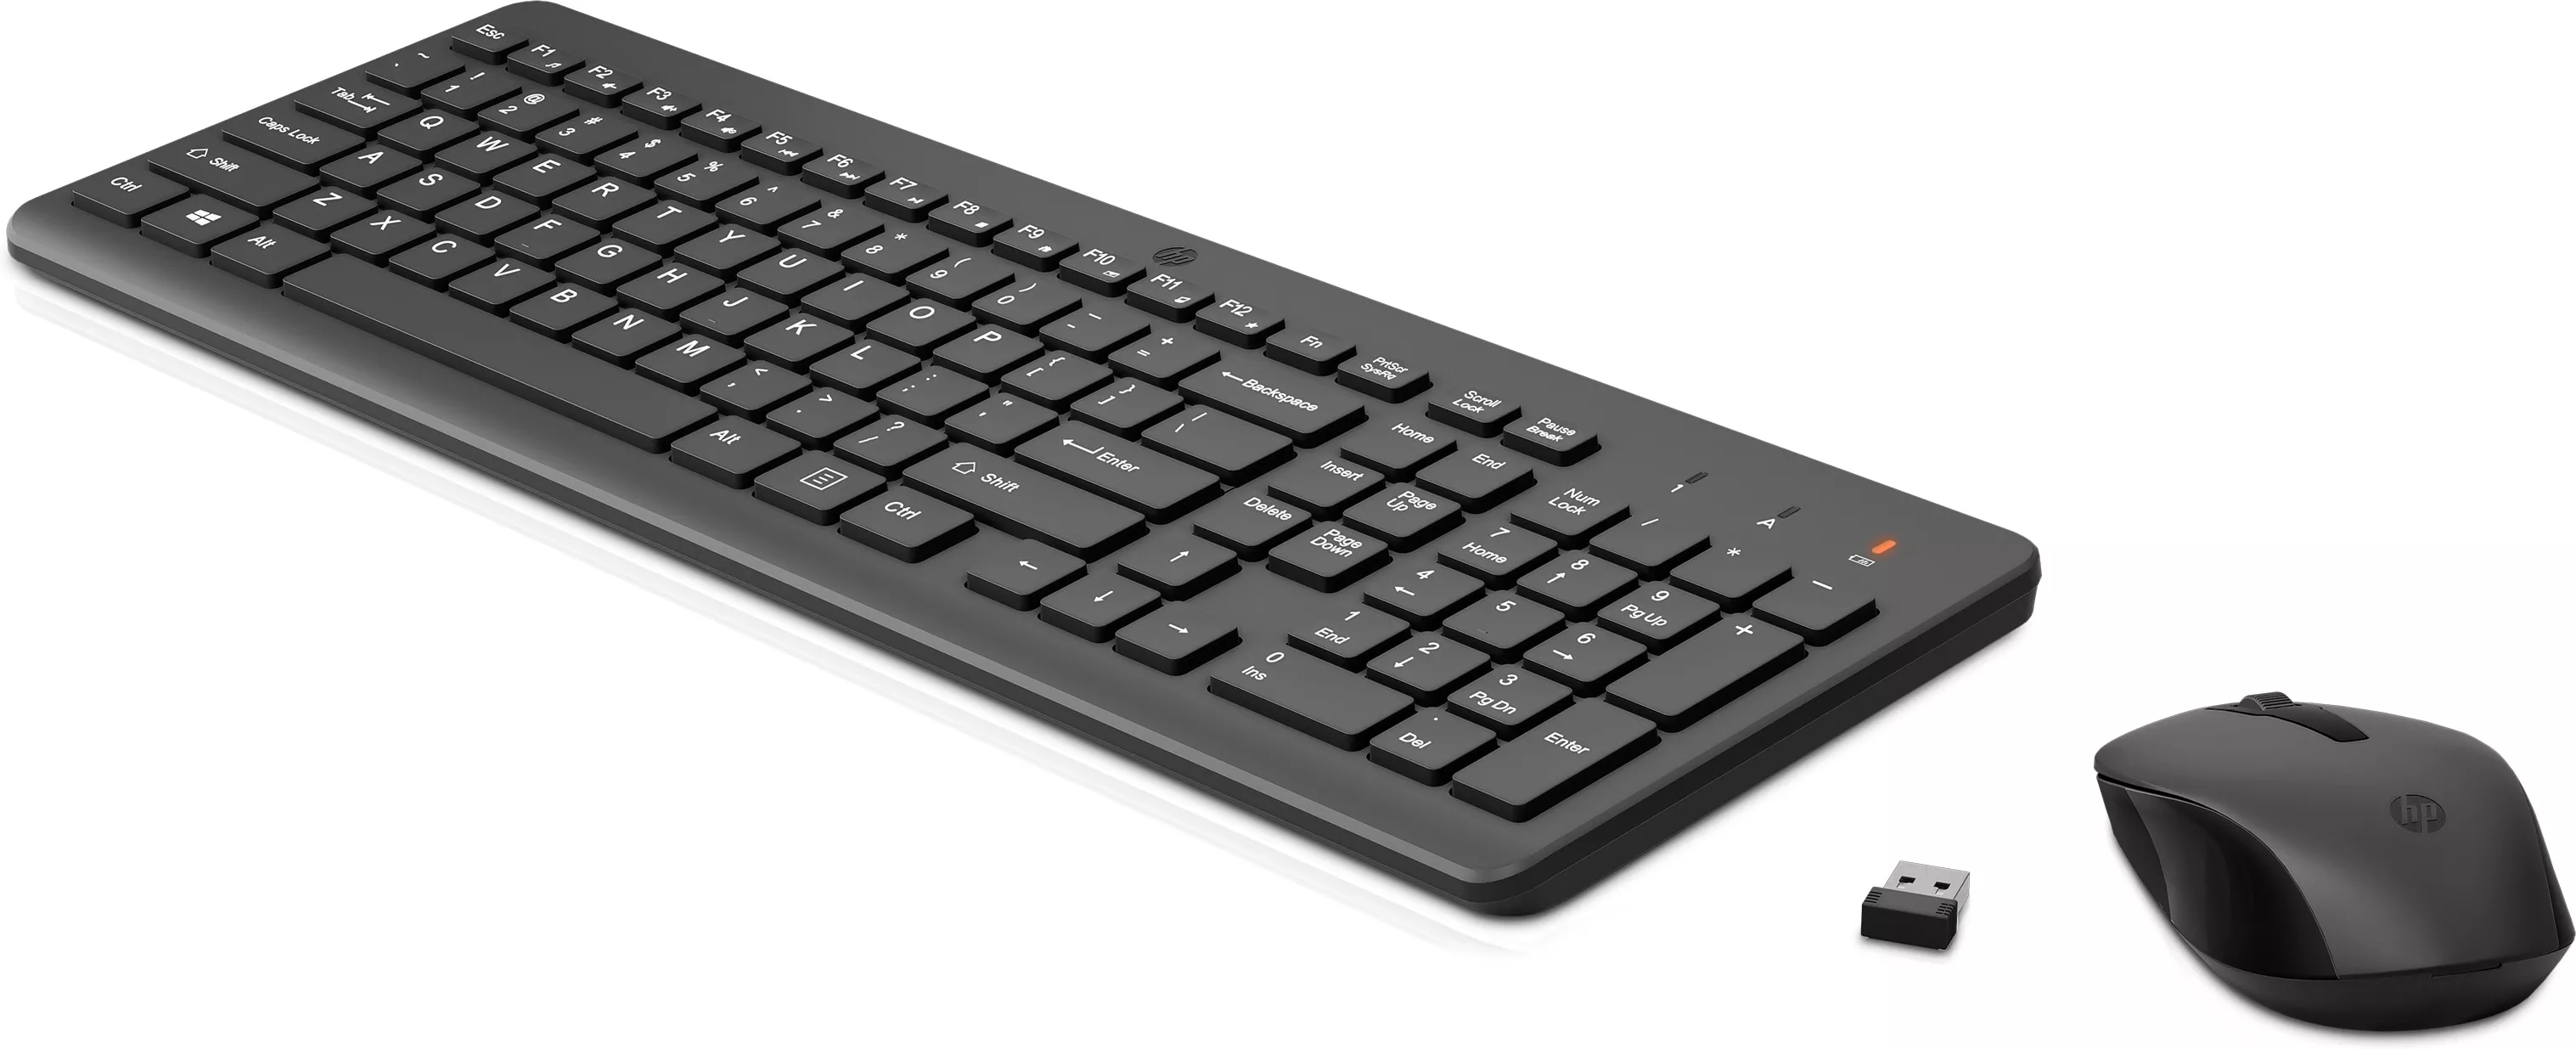 Vente Ensemble combiné clavier et souris sans fil HP HP au meilleur prix - visuel 2